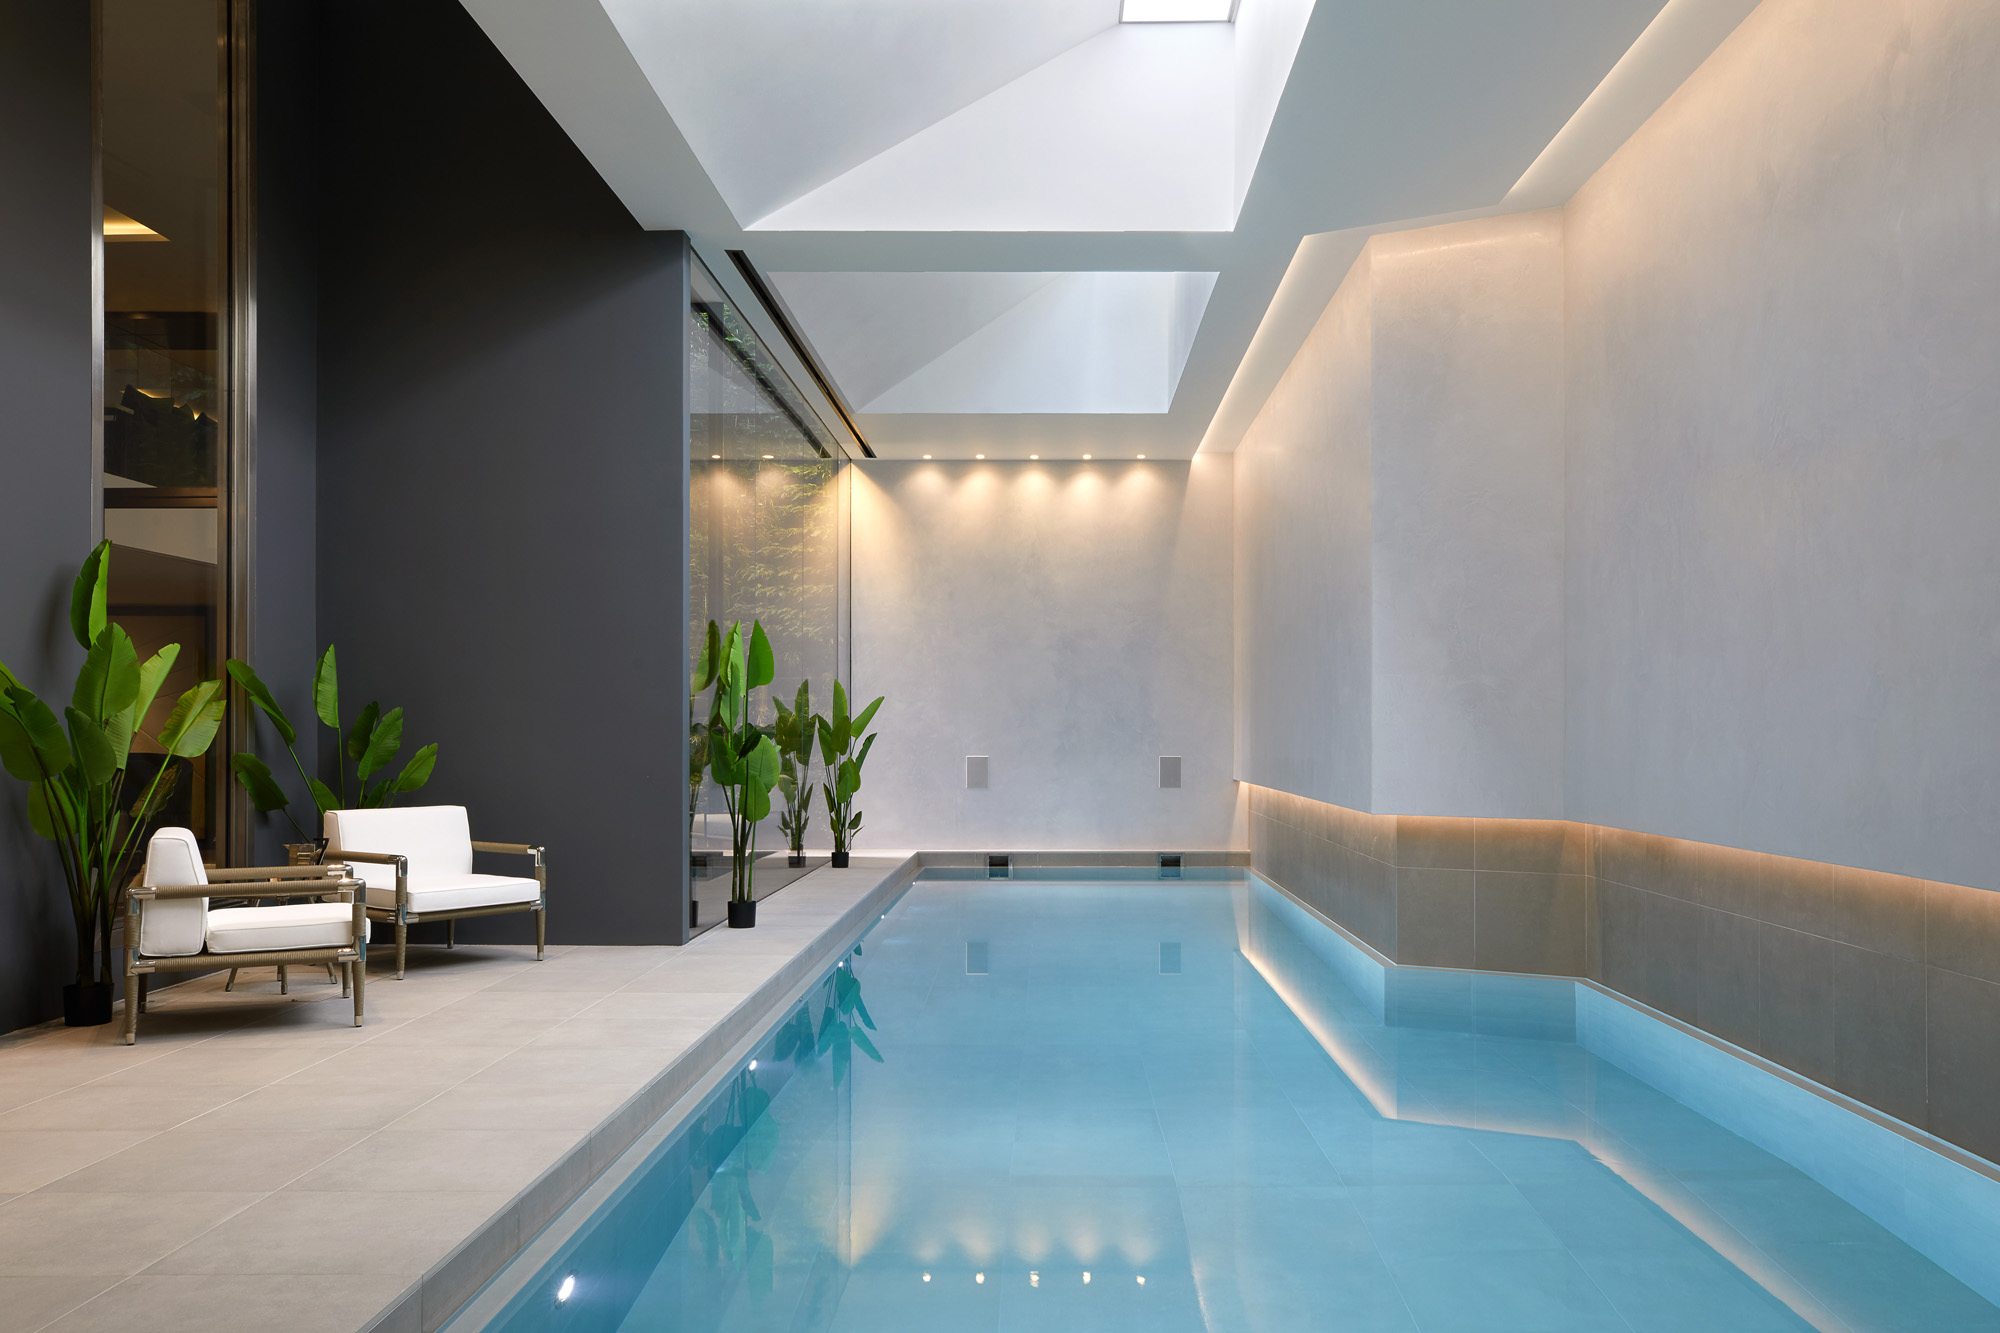 Swimming Pool by Marano Masey - contemporary architecture studio in London